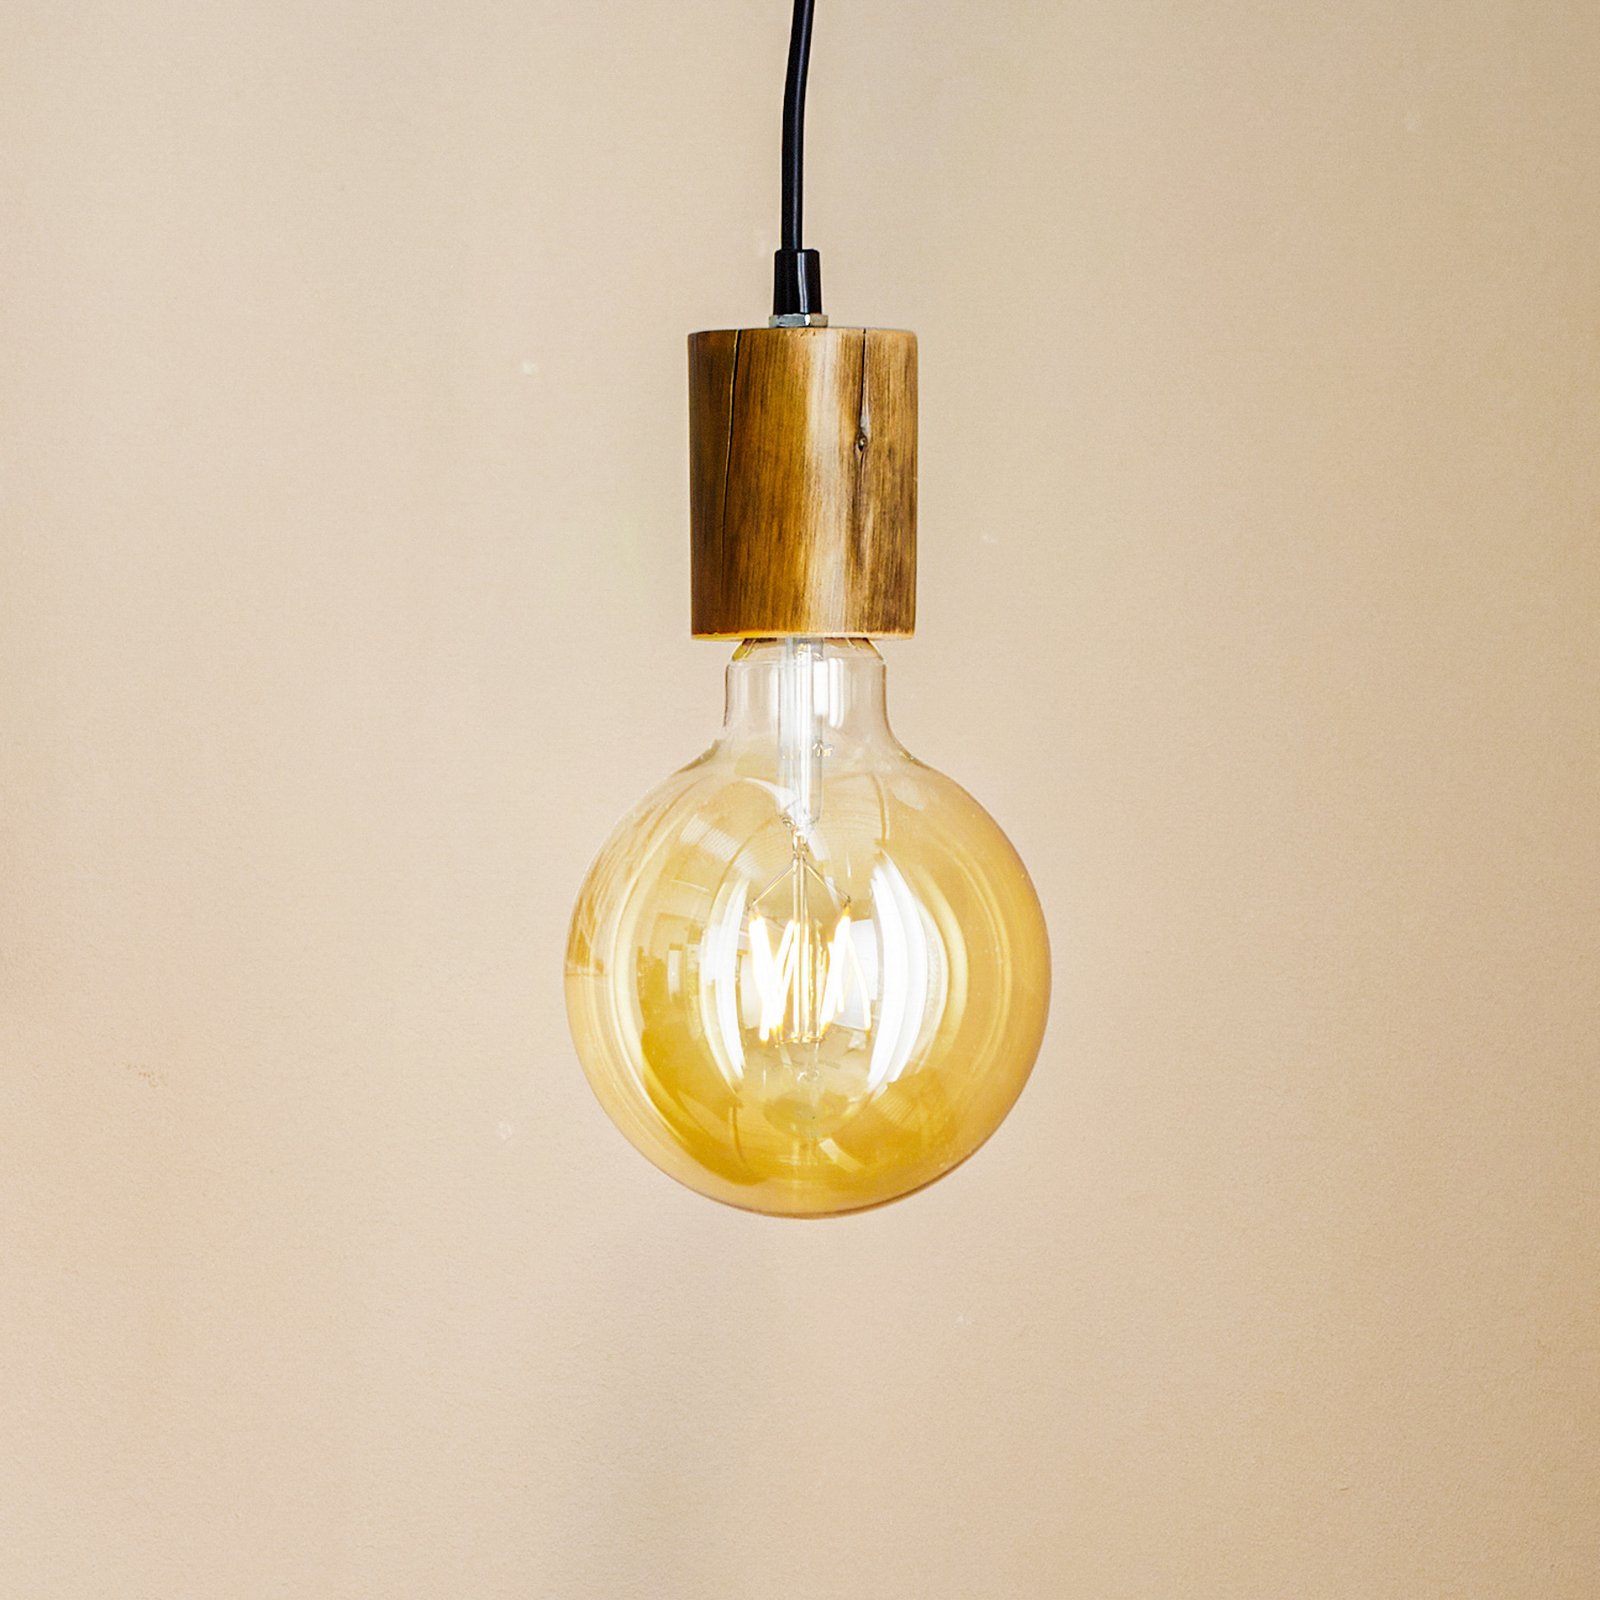 Závesné svietidlo Tronco, jedno svetlo, drevený záves 8 cm